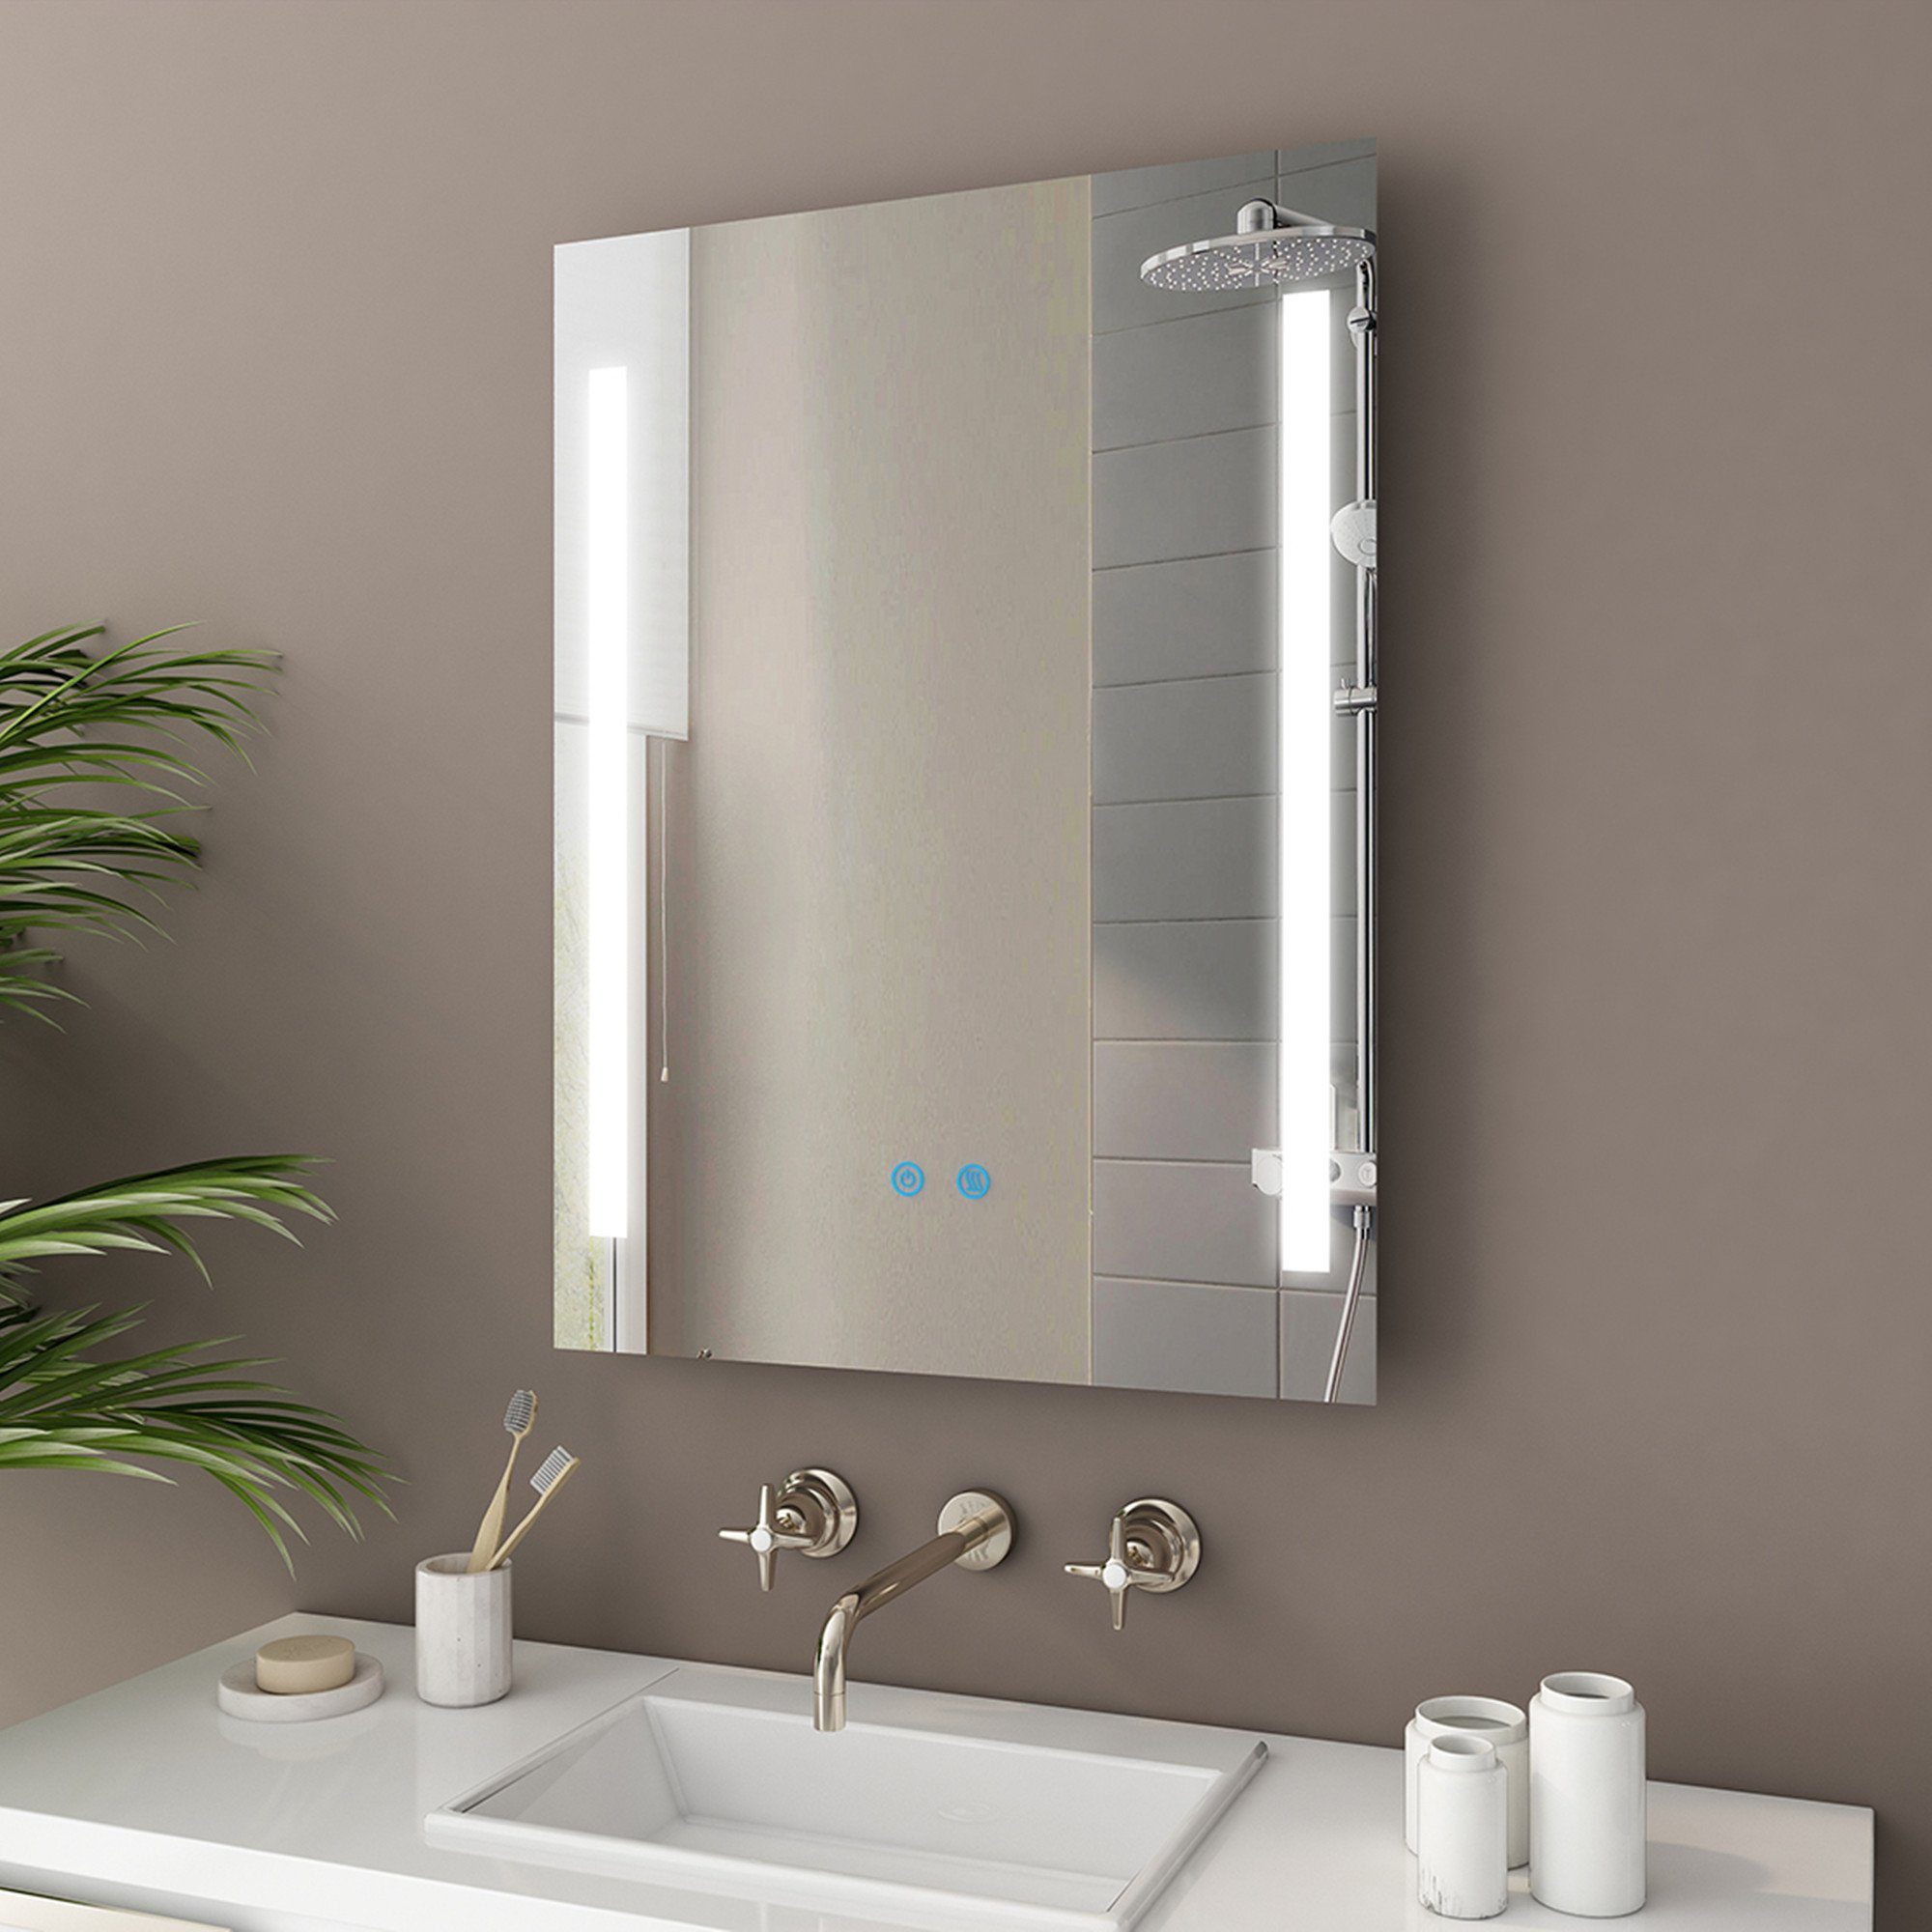 IMPTS Badspiegel LED Badezimmerspiegel mit Beleuchtung Touchschalter, IP44, Dimmbar